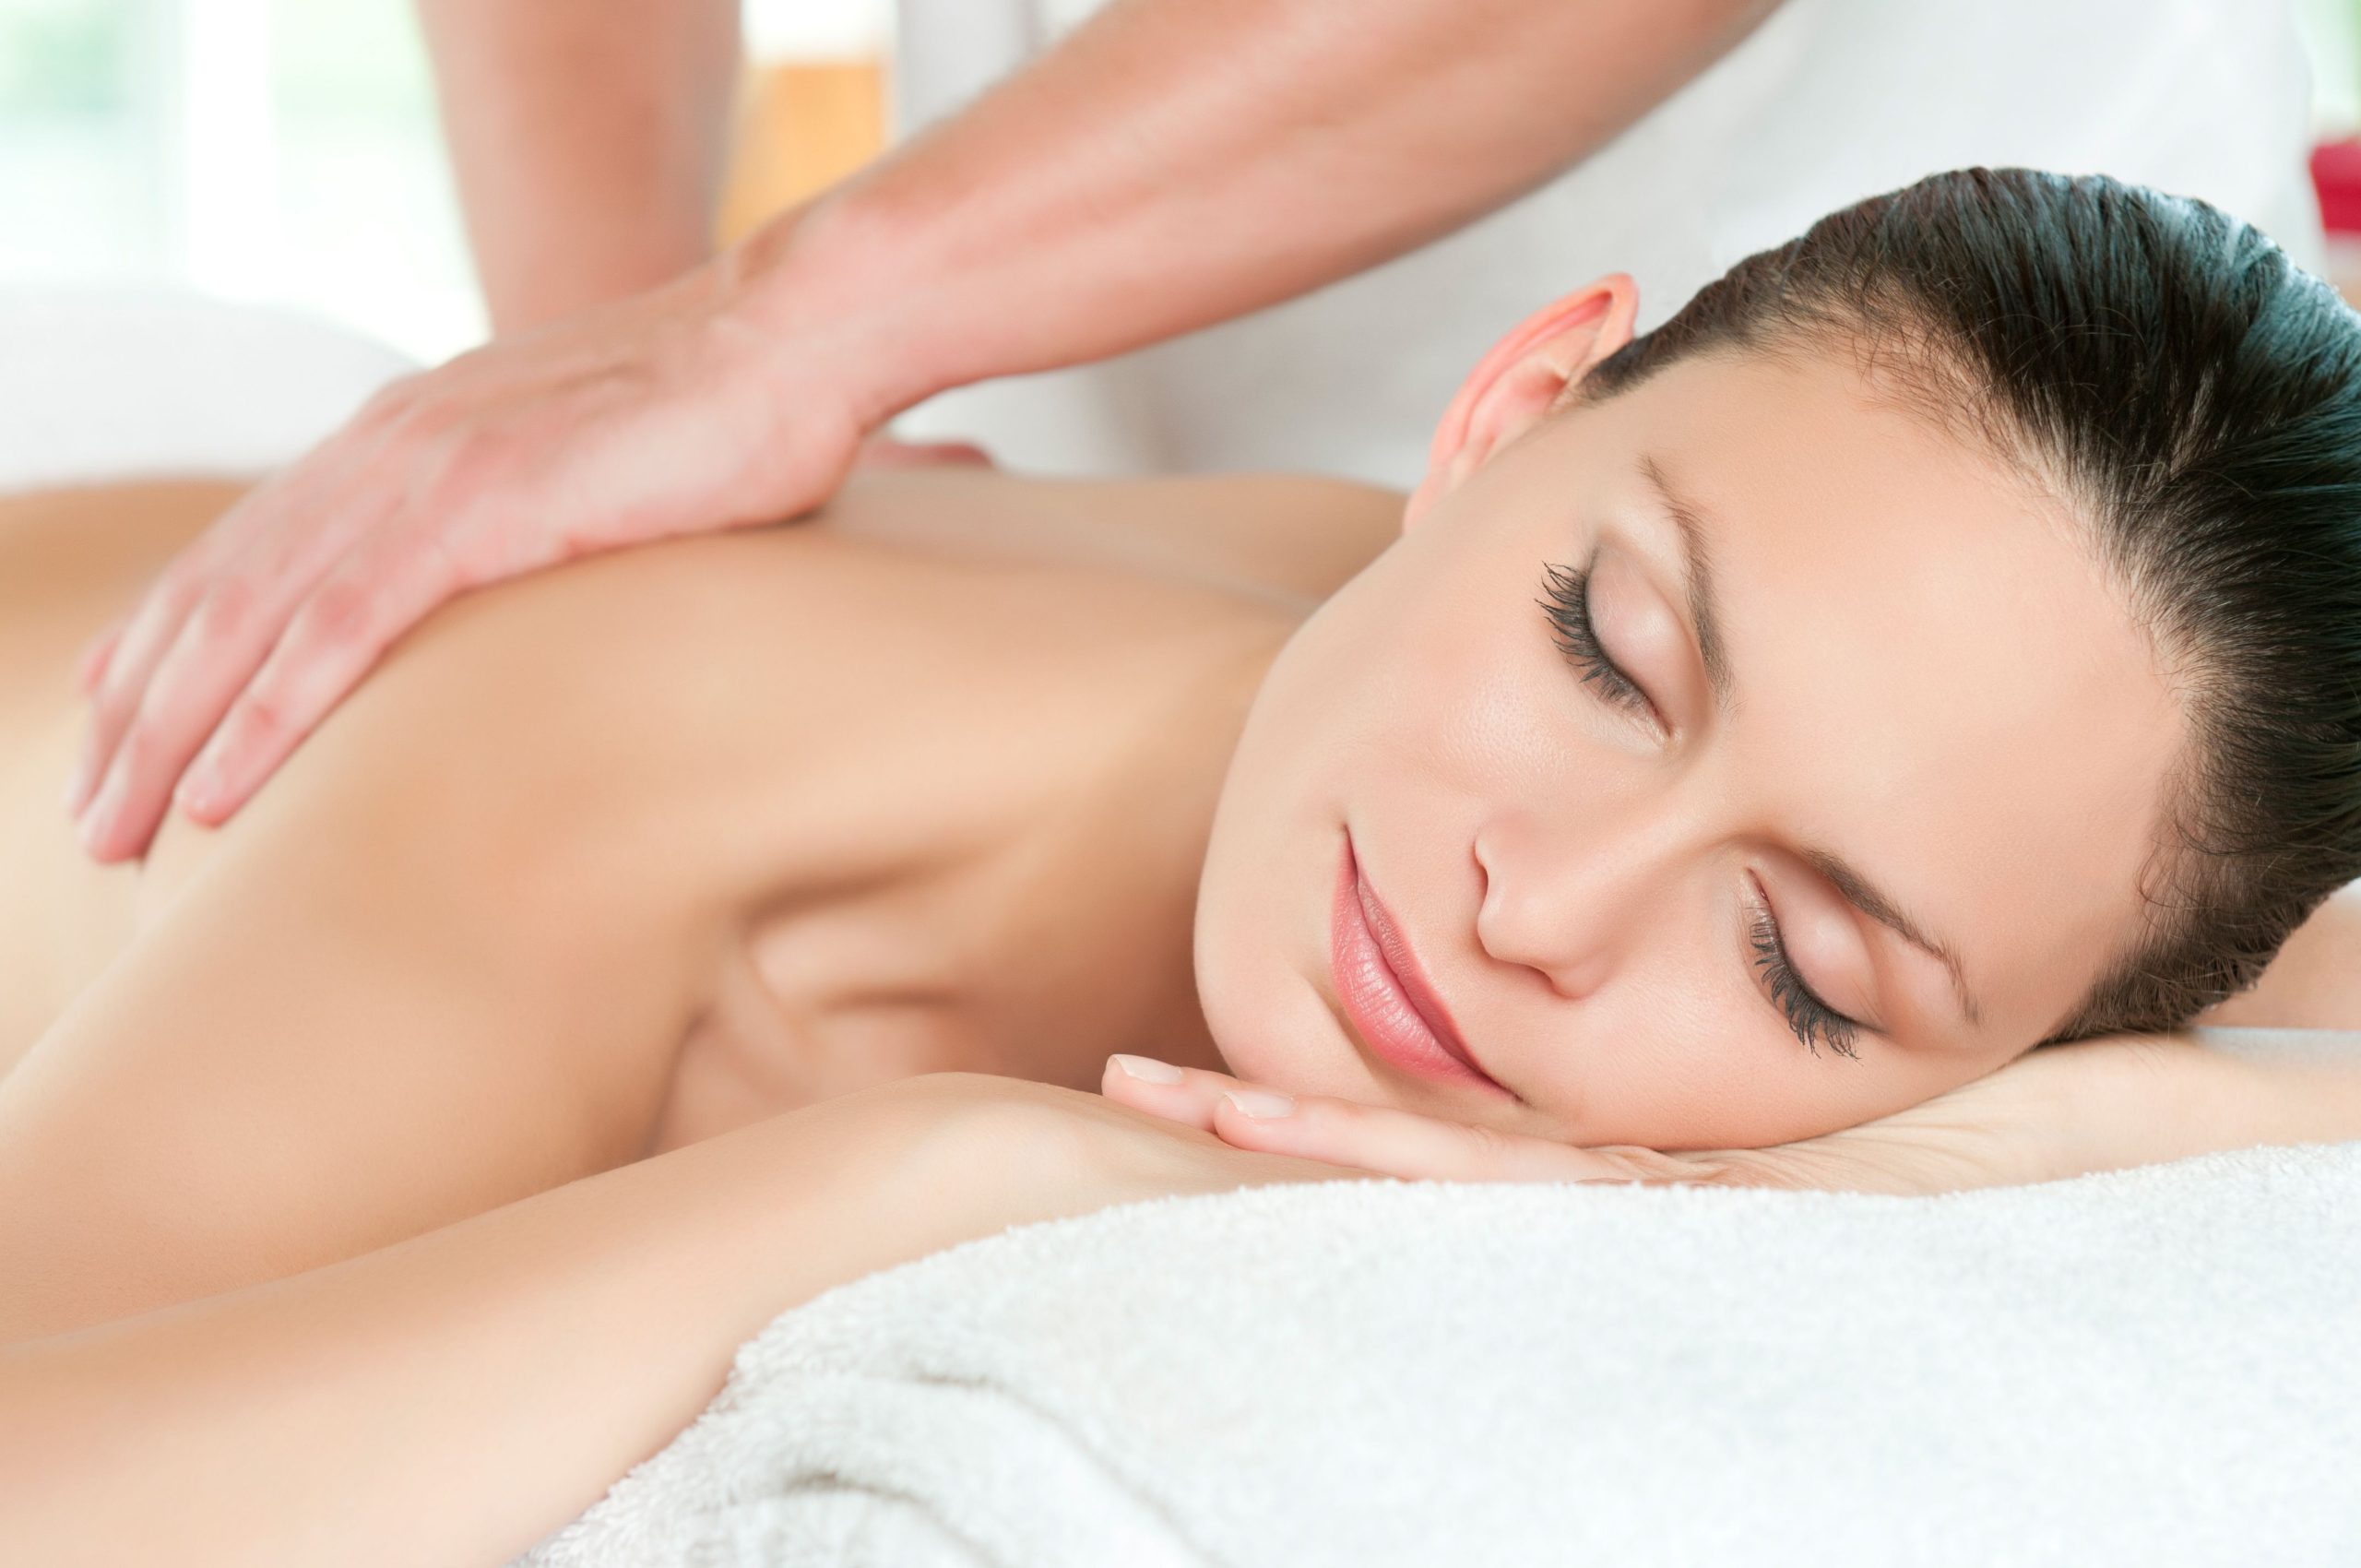 Relaxation Massage Therapist Near Mukilteo, WA